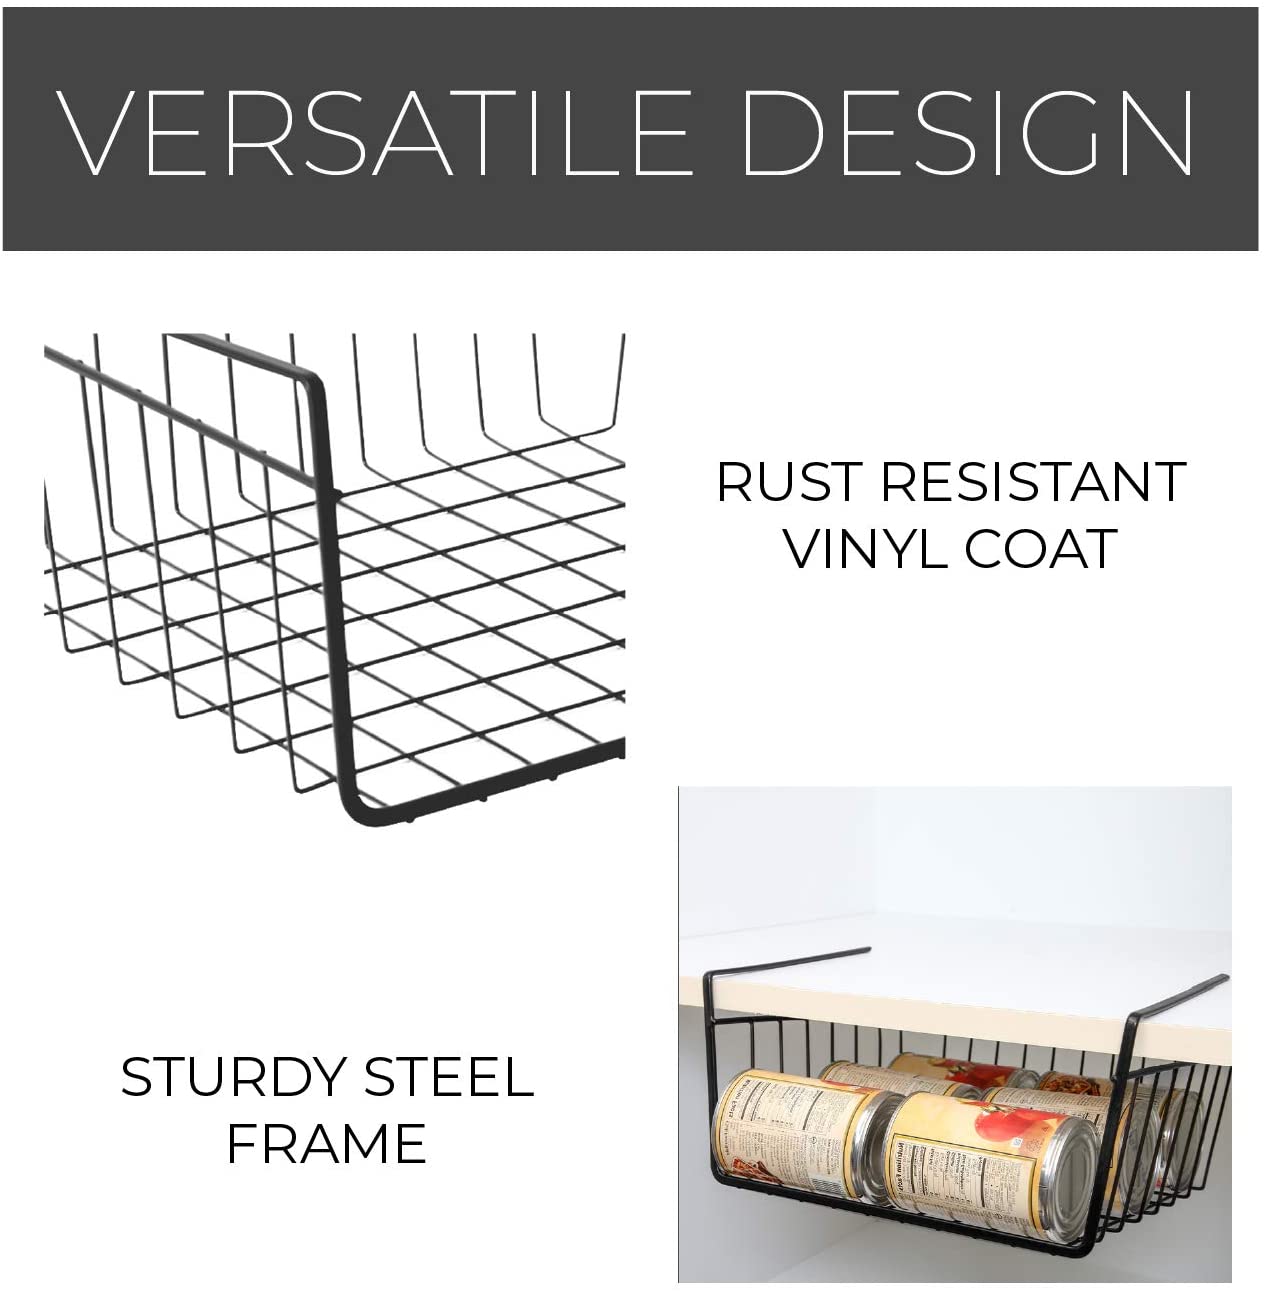 https://www.shopsmartdesign.com/cdn/shop/products/medium-steel-undershelf-storage-basket-smart-design-kitchen-8258638as6-incrementing-number-439944.jpg?v=1679333758